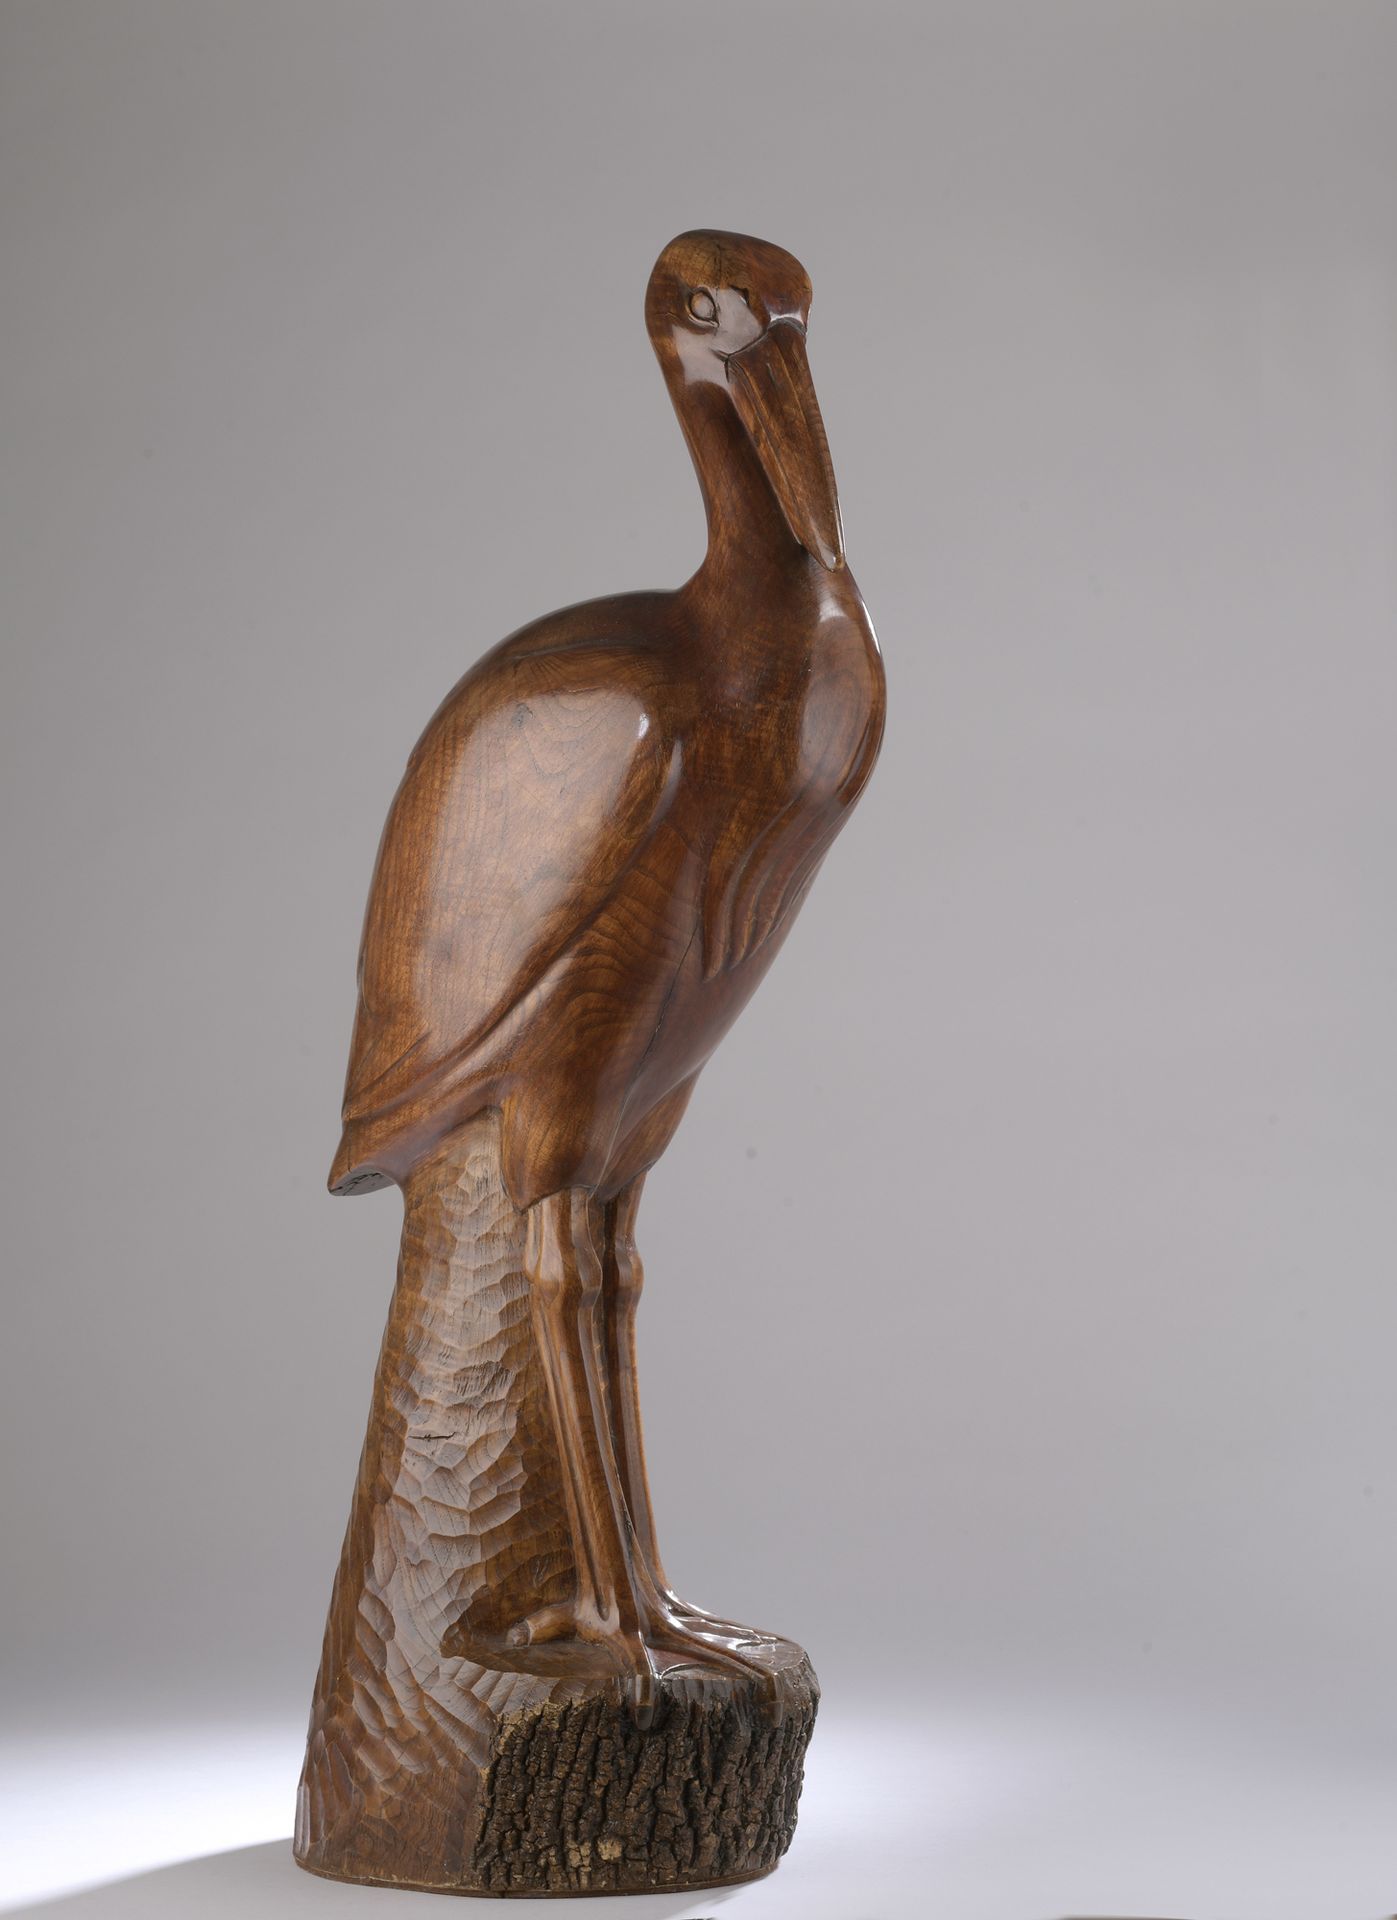 Null François MARTINEZ (1902-1986)

Heron

Around 1935.

Sculpture in direct siz&hellip;